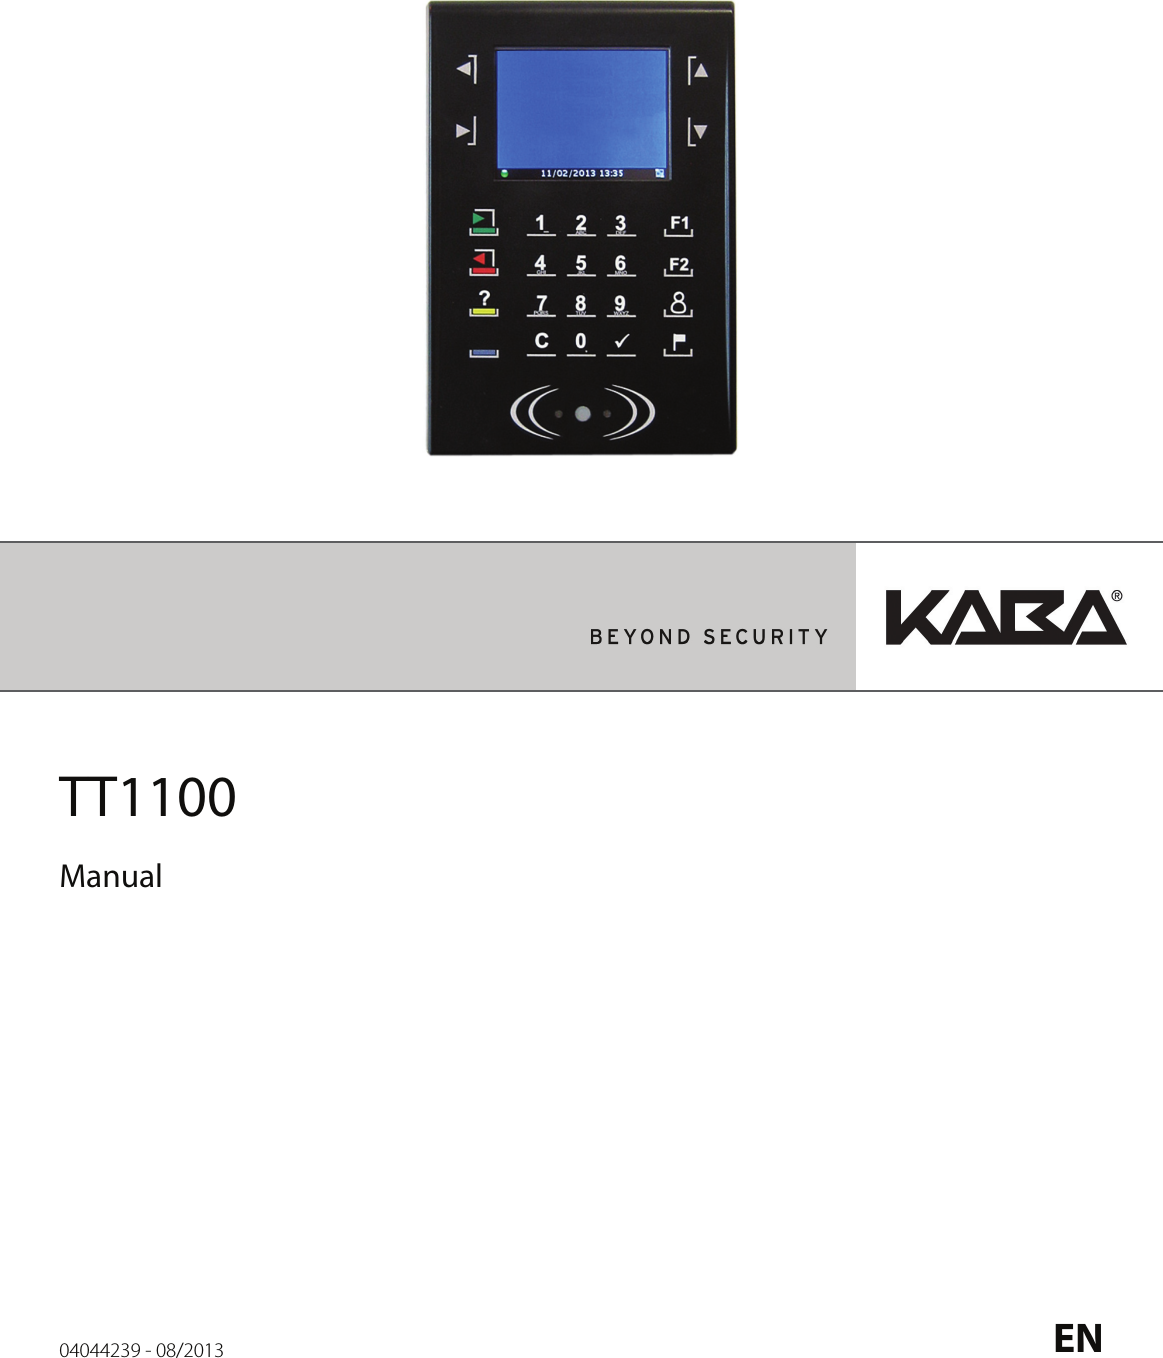                TT1100         Manual    04044239 - 08/2013  EN  